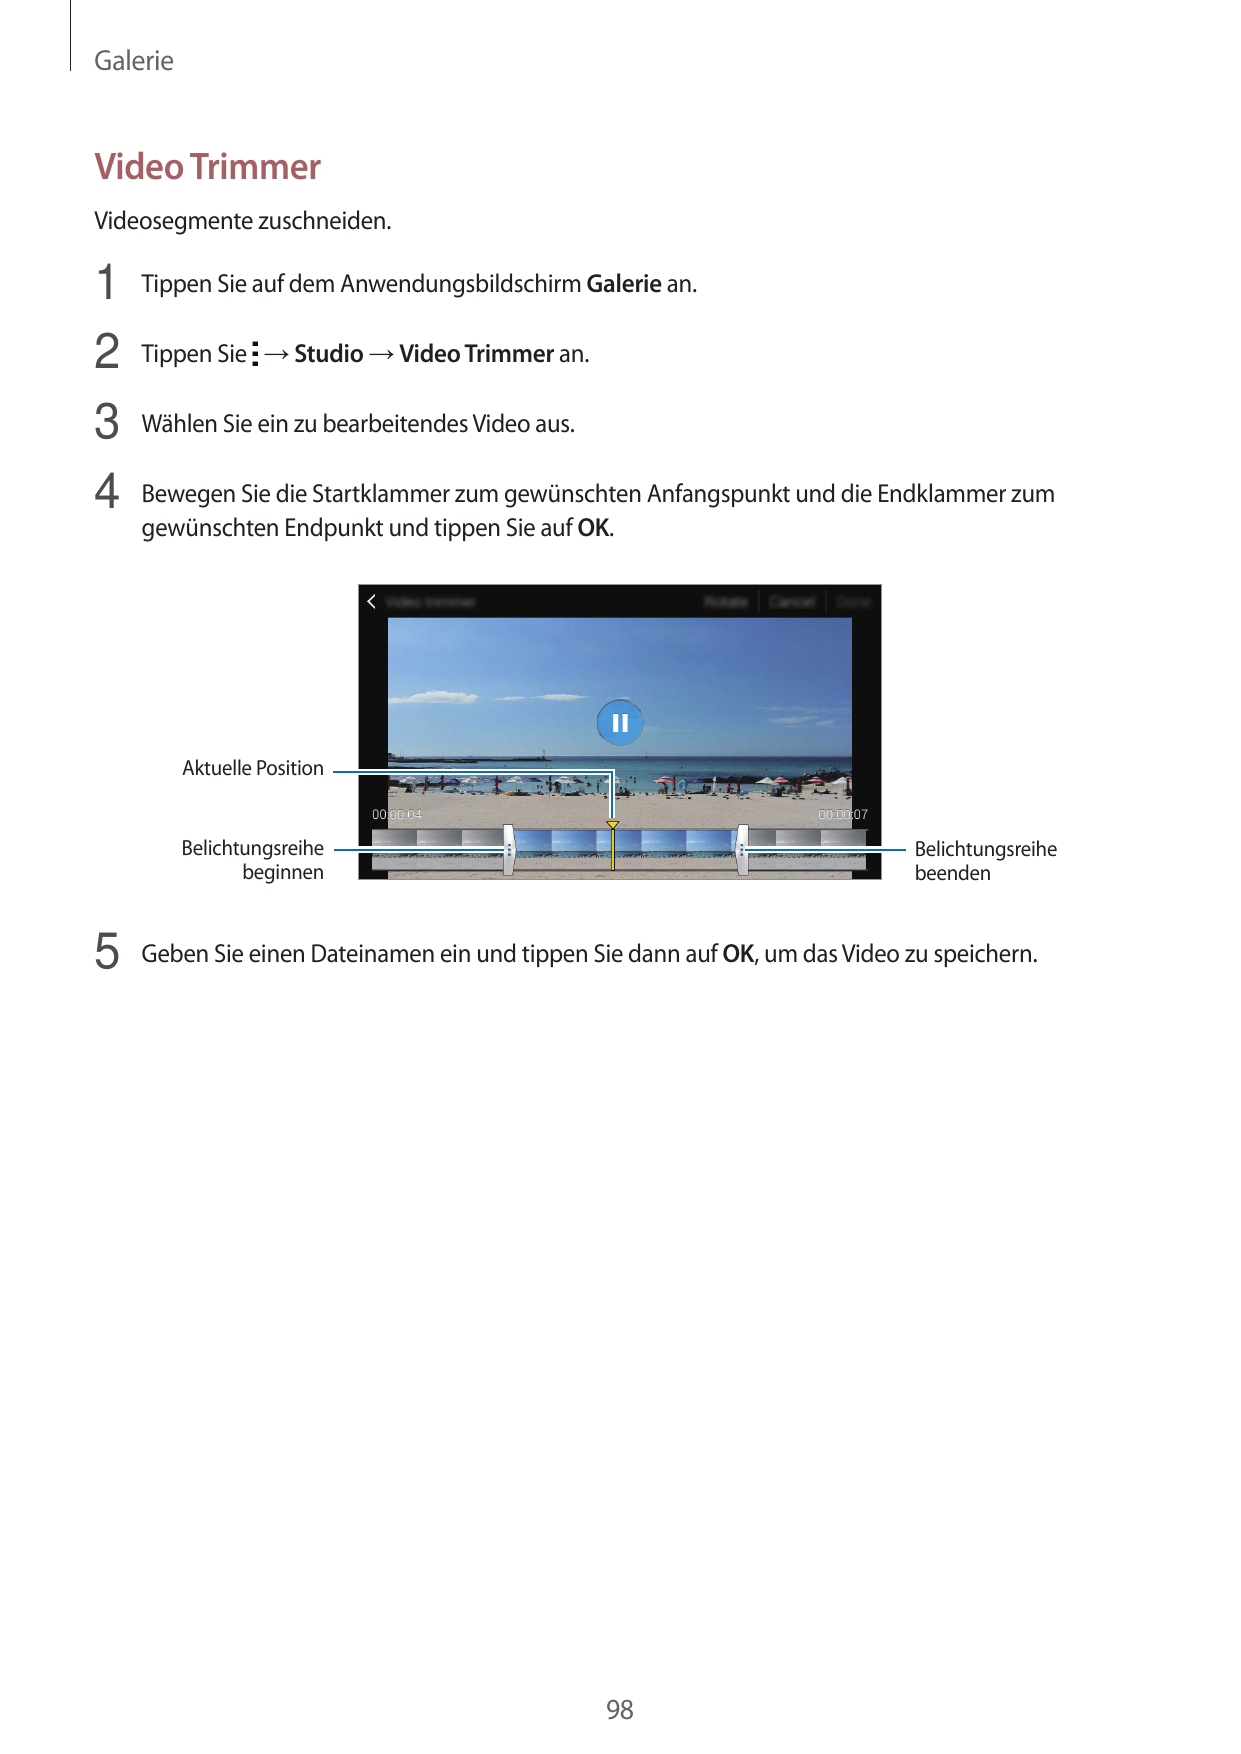 GalerieVideo TrimmerVideosegmente zuschneiden.1 Tippen Sie auf dem Anwendungsbildschirm Galerie an.2 Tippen Sie → Studio → Video